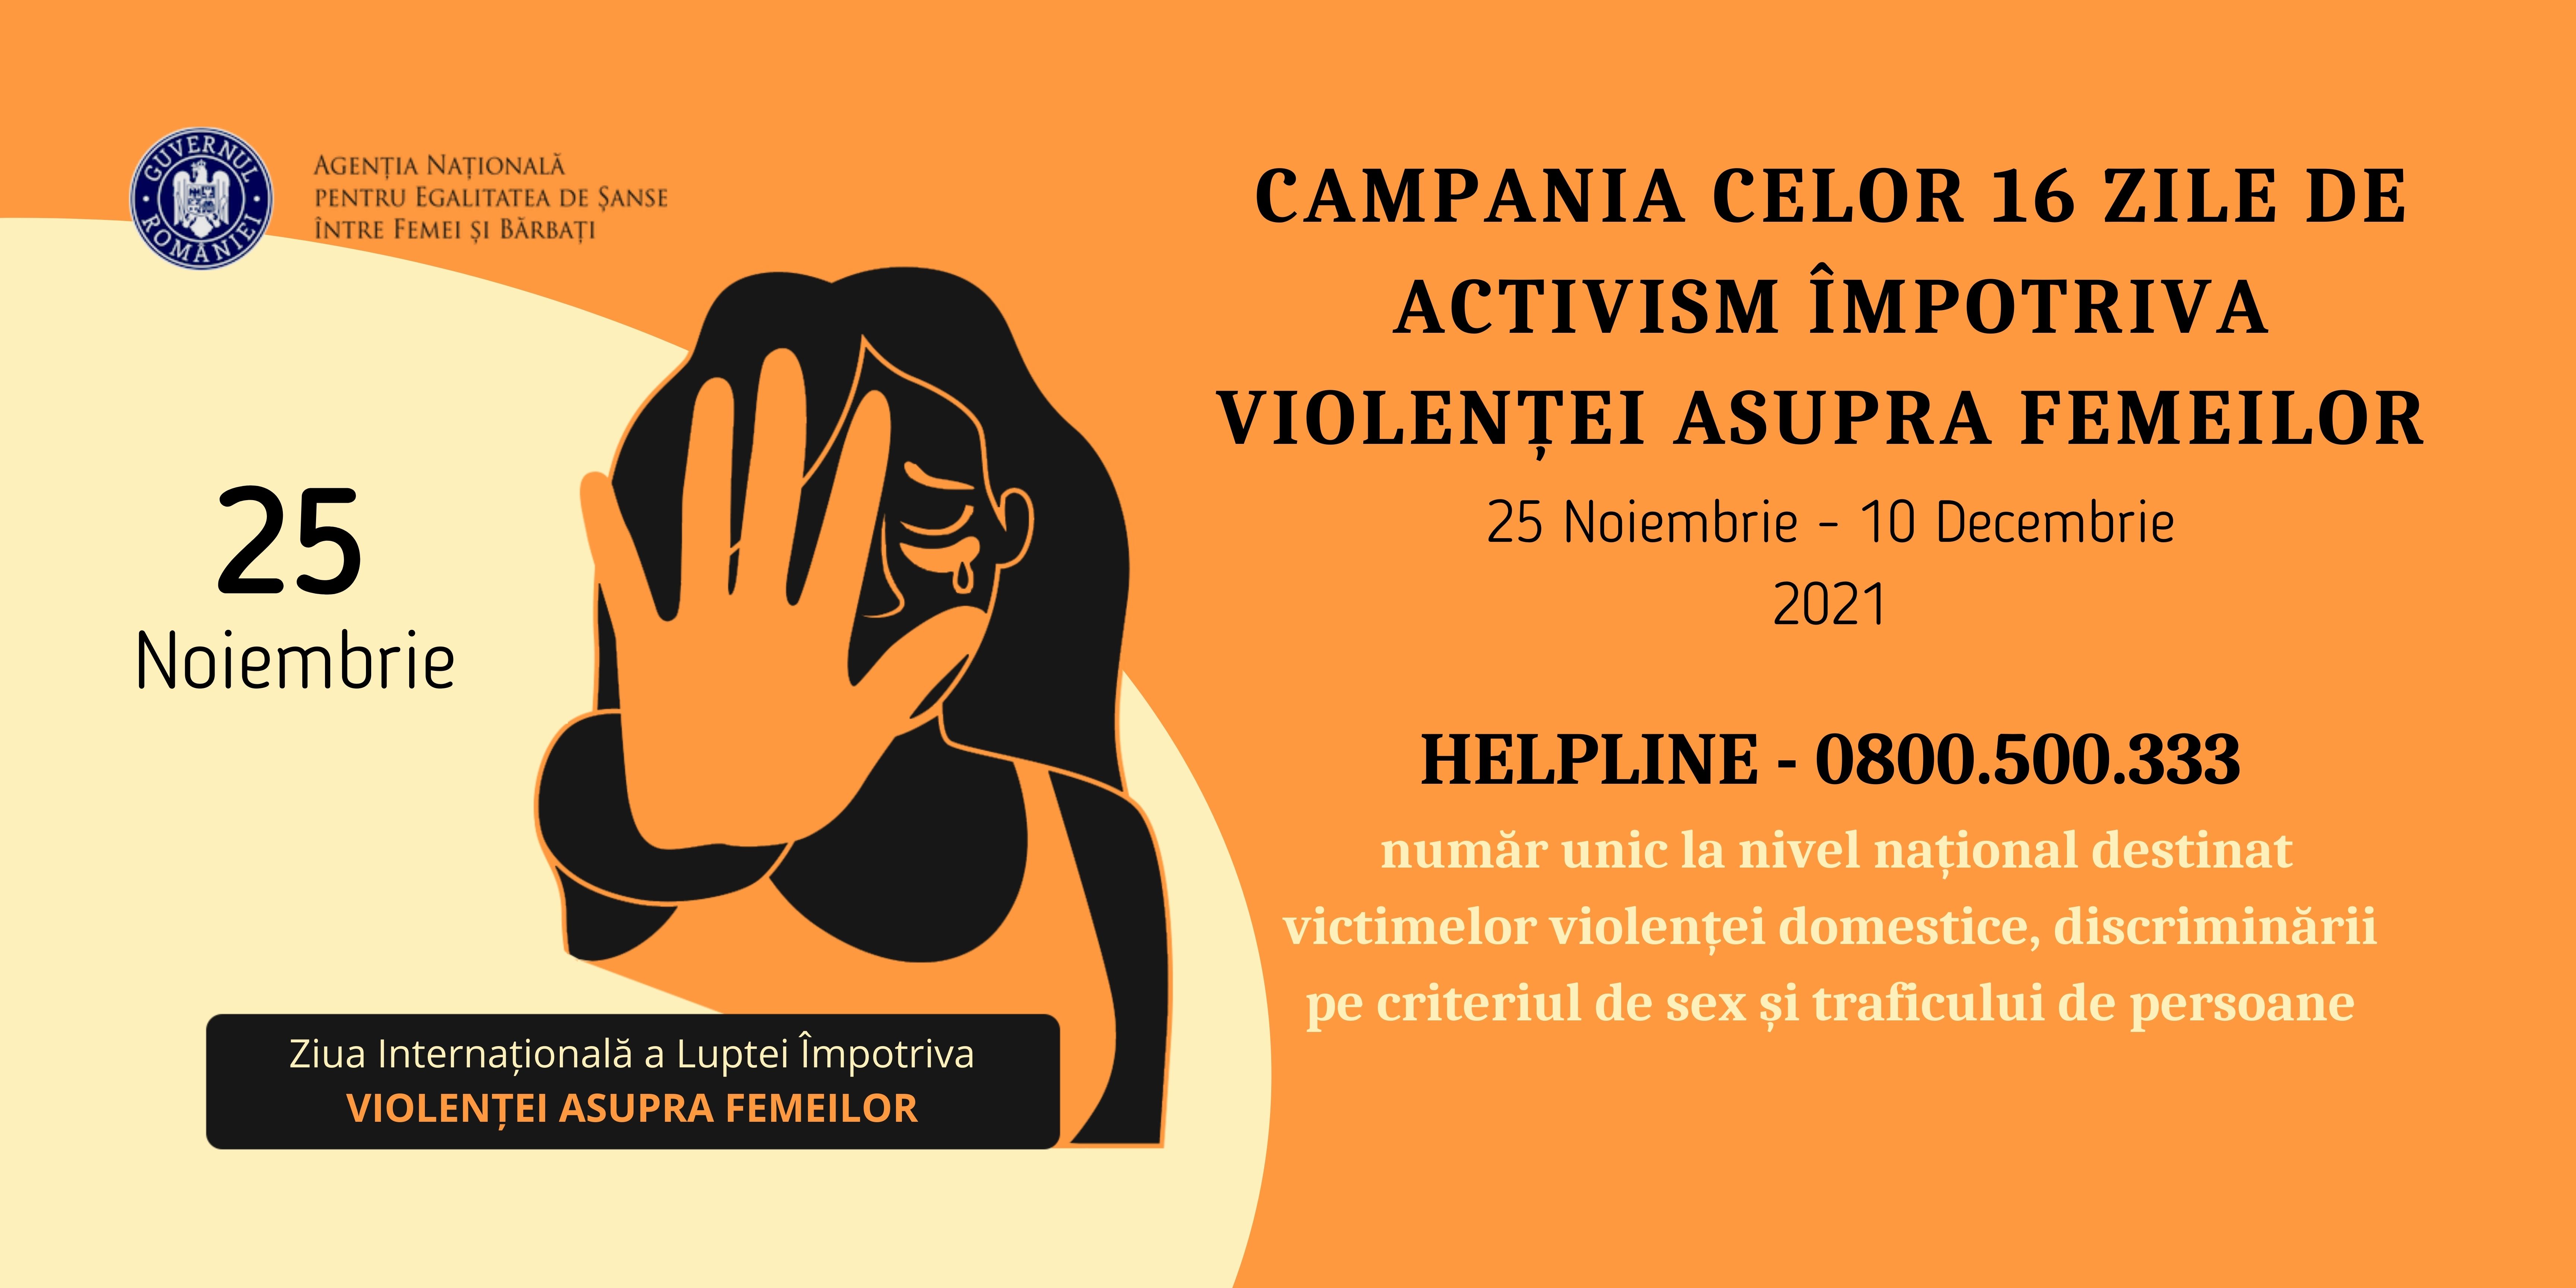 Campania celor 16 zile de activism împotriva violenței asupra femeilor